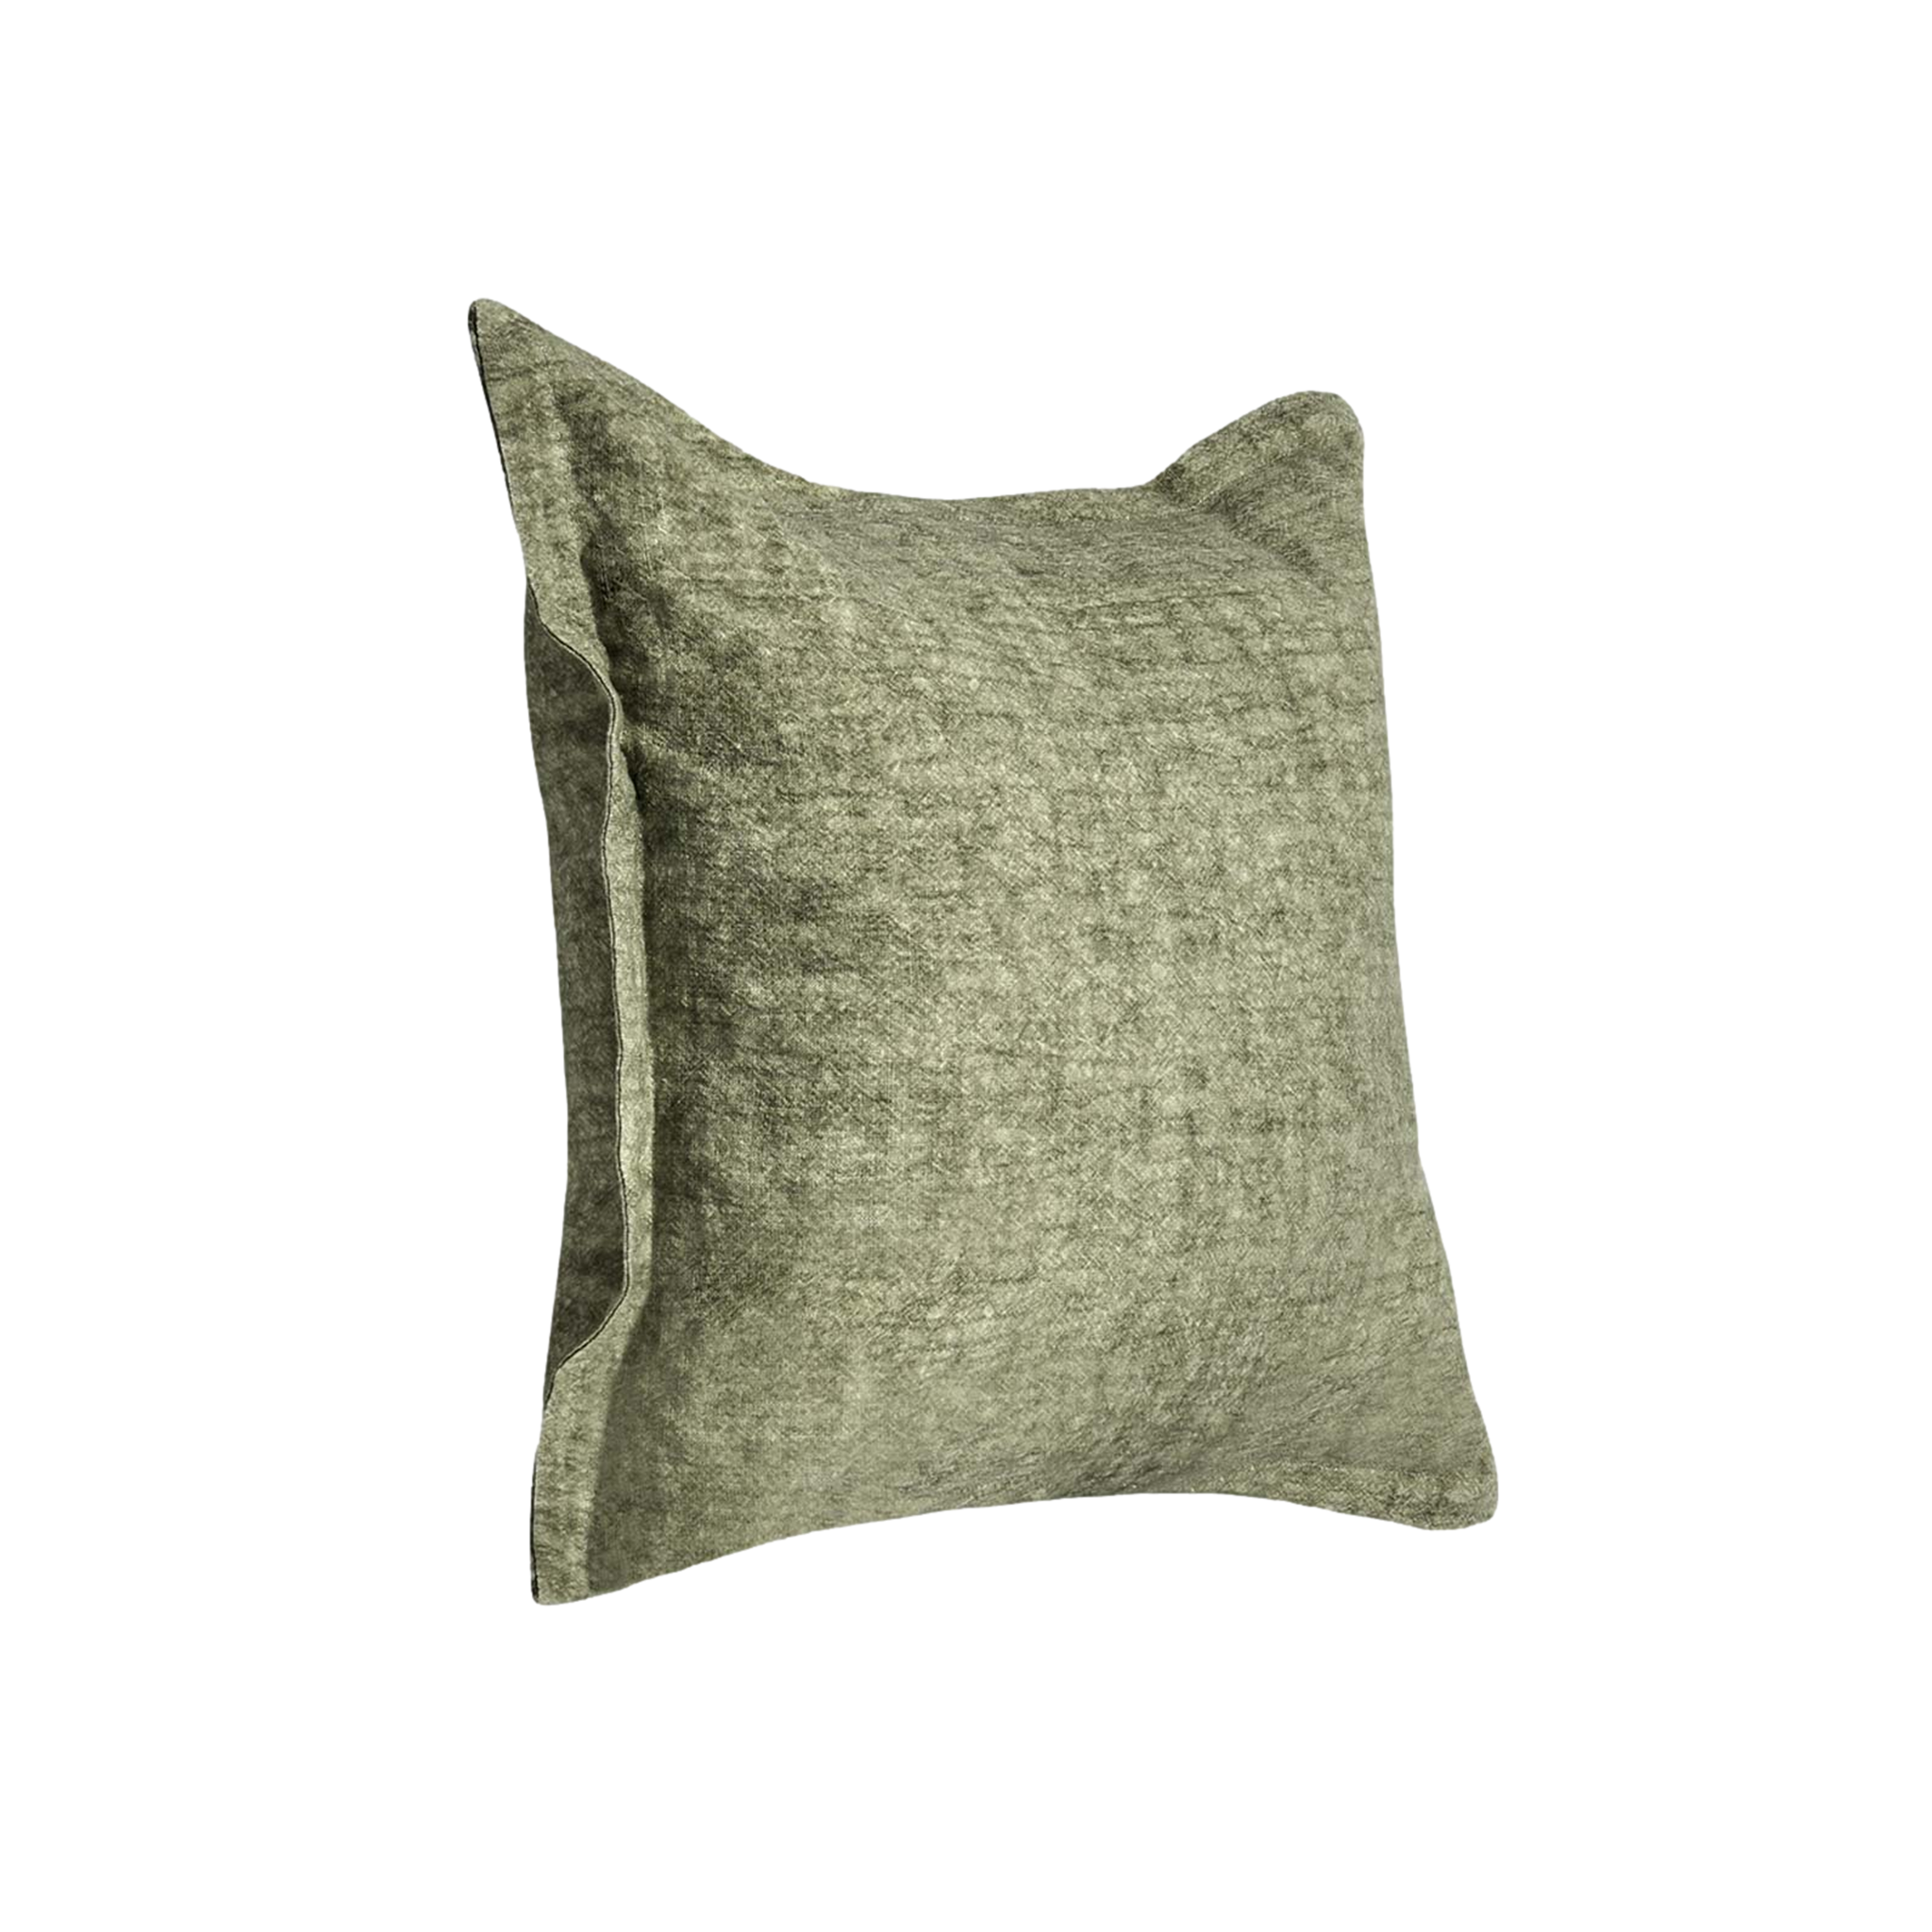 Solstice Pillow in Cedar Green